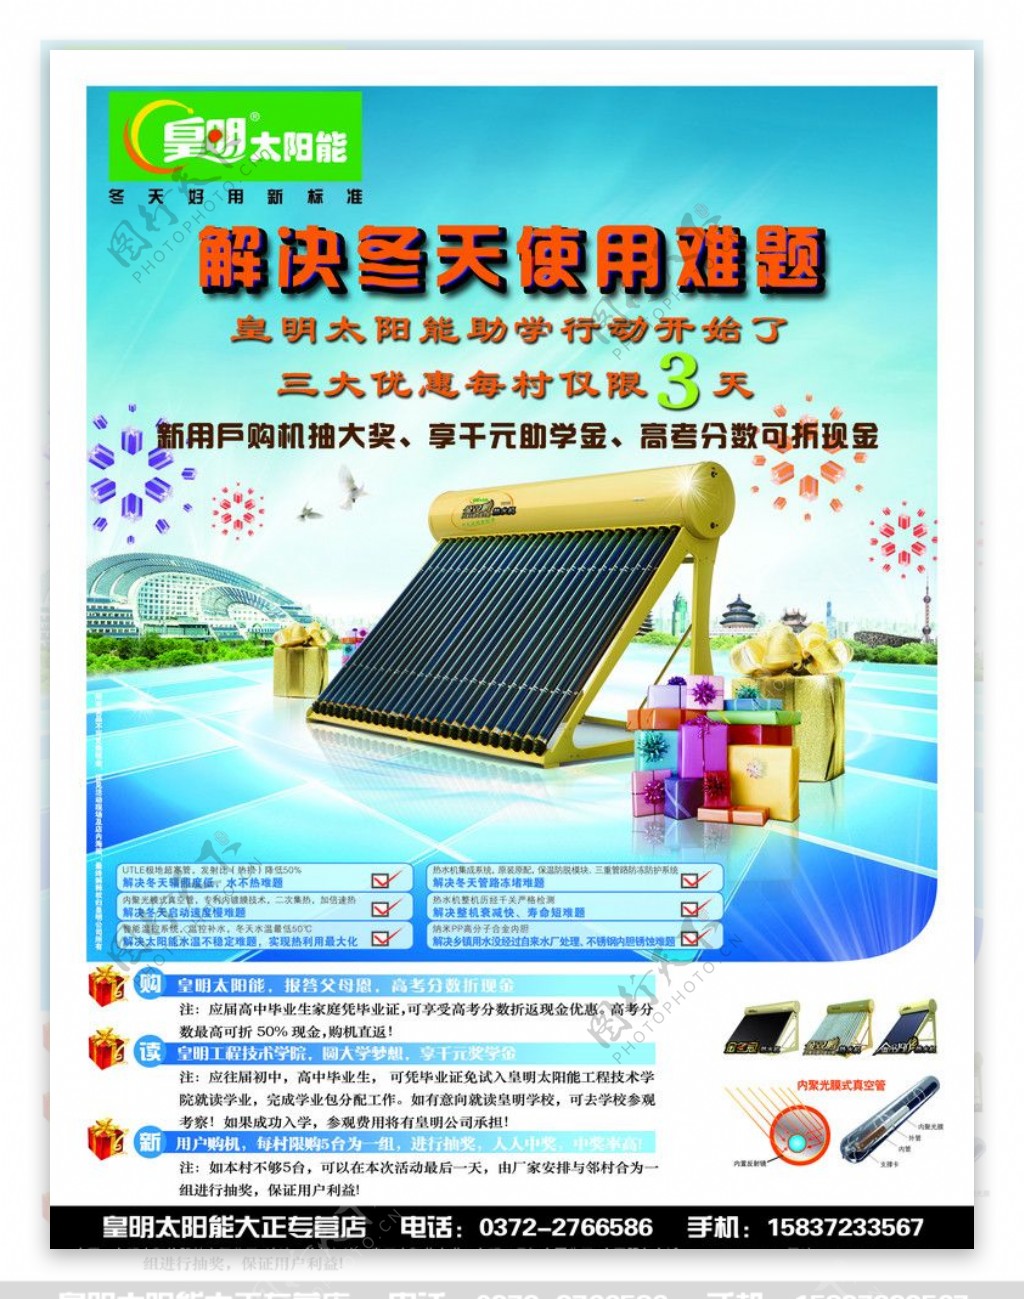 皇明太阳能宣传广告图片